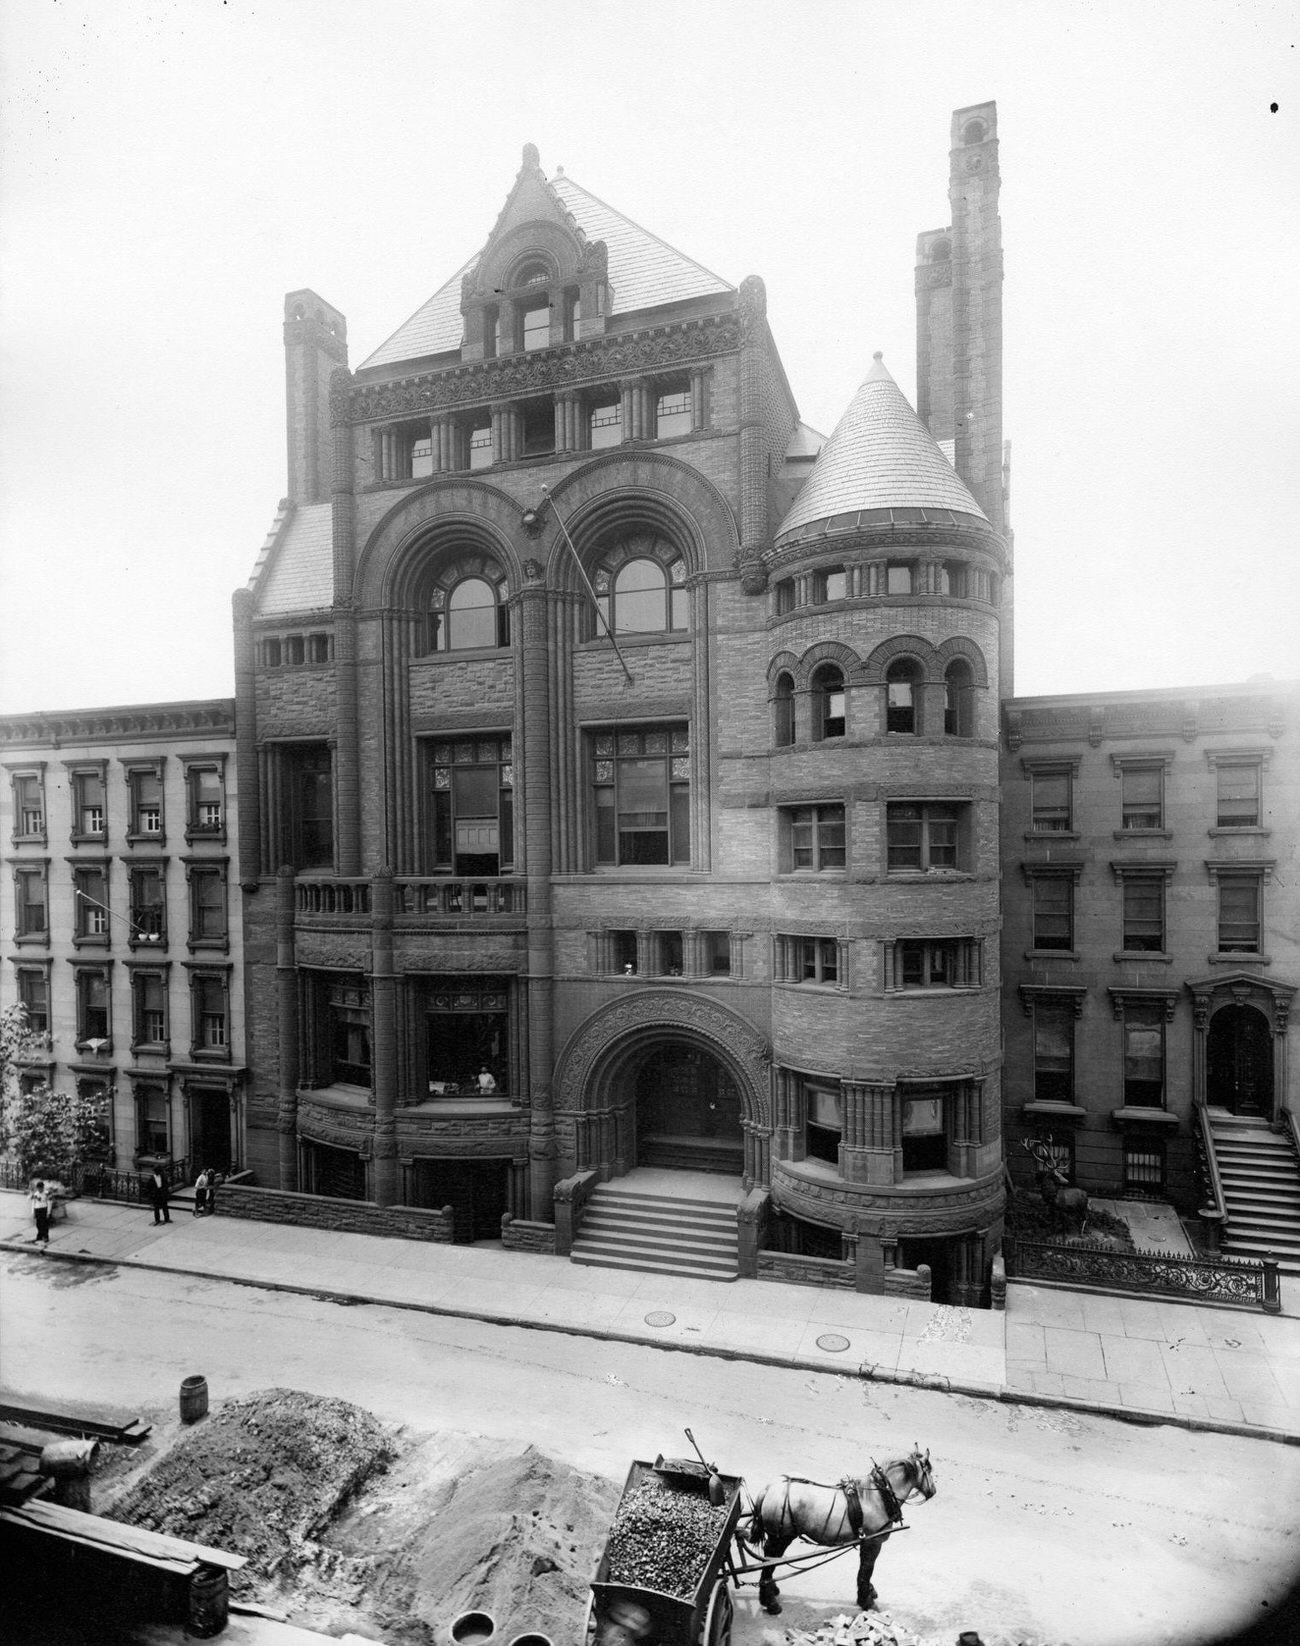 Germania Club On Schermerhorn Street, Brooklyn, 1895.